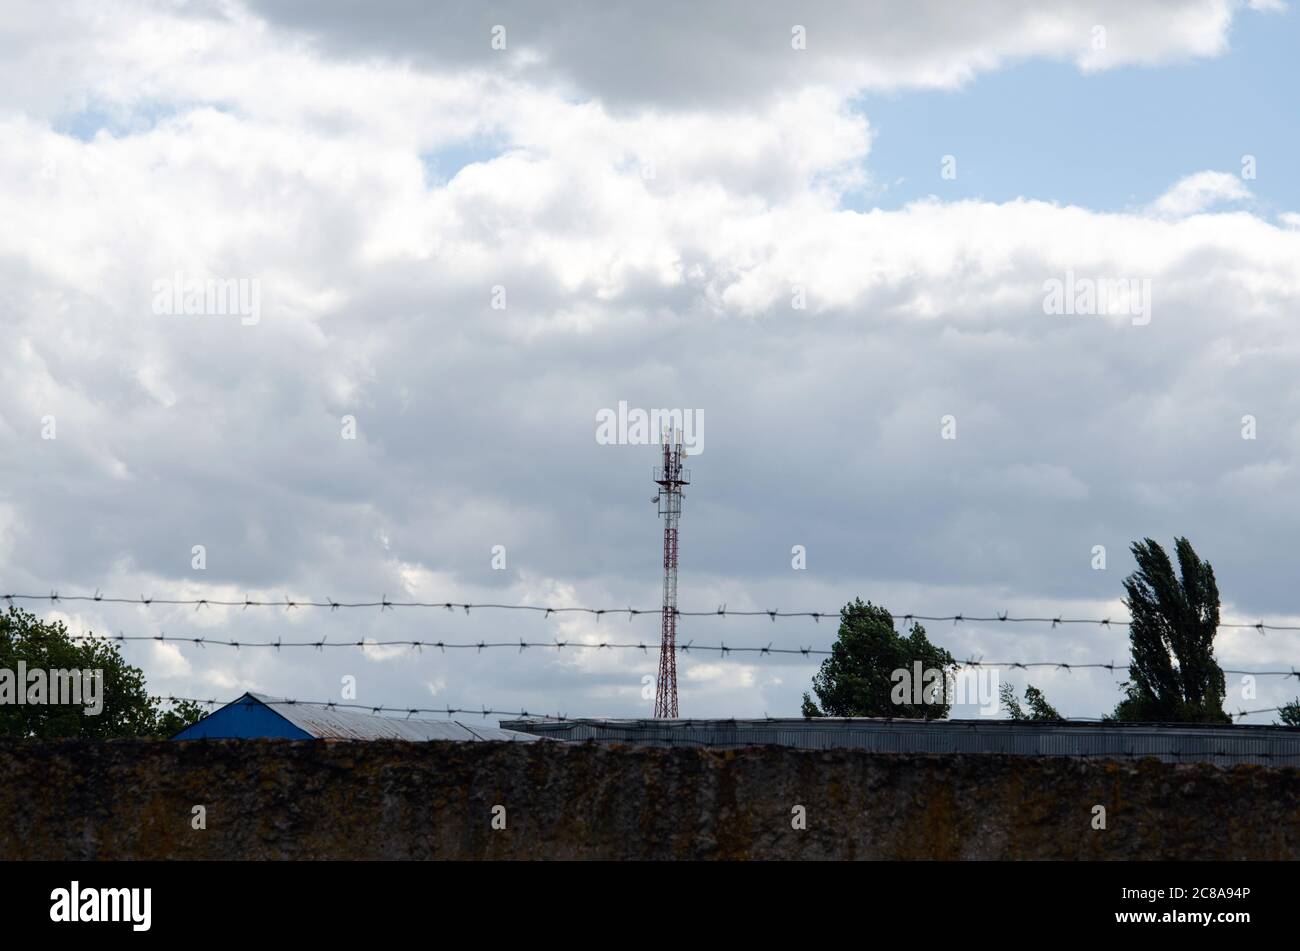 Telekommunikationsturm mit 4G-, 5G-Sendern. Mobilfunkbasisstation mit Sendeantennen auf einem Telekommunikationsturm gegen den blauen Himmel Stockfoto